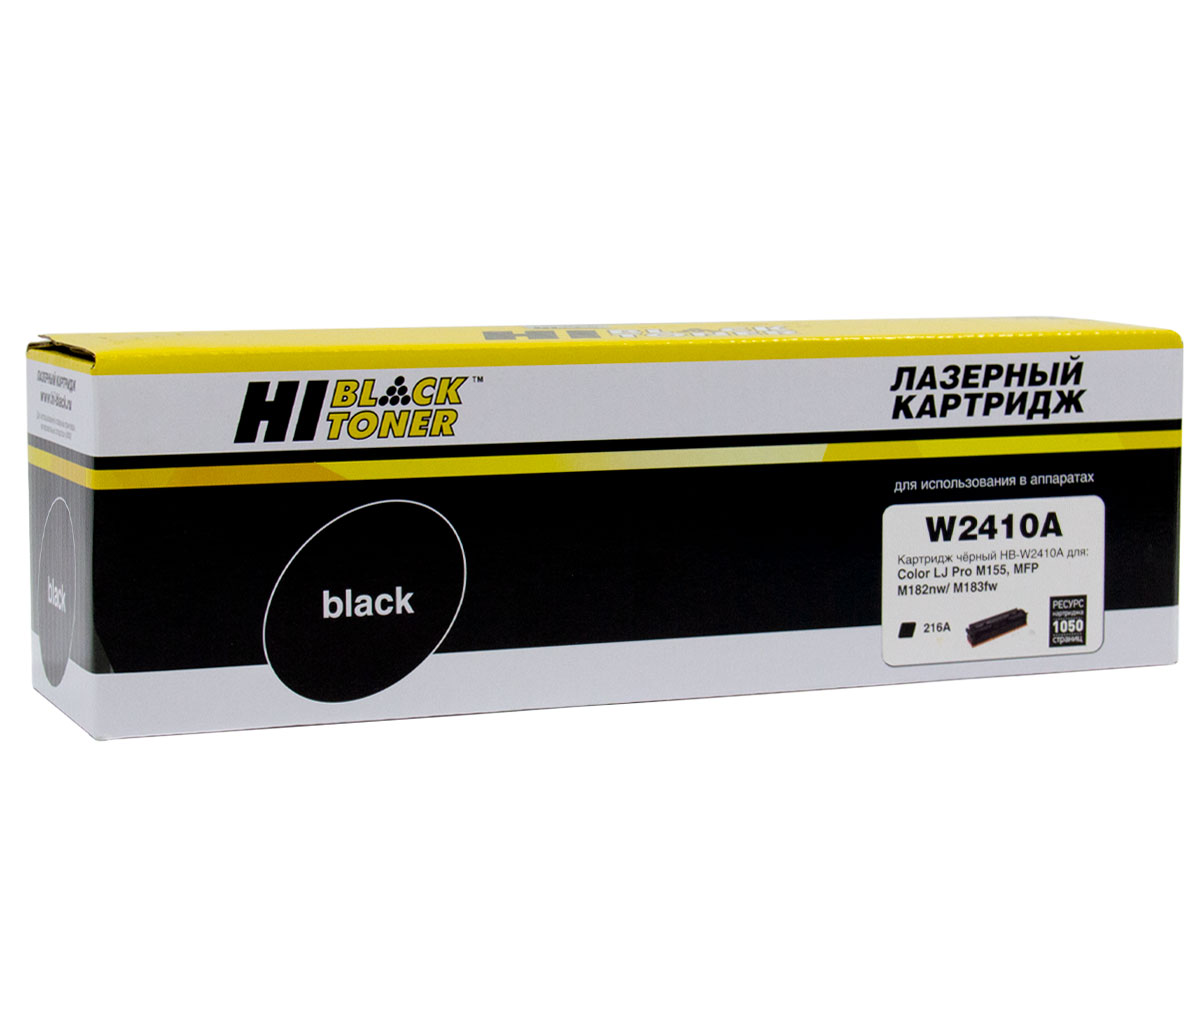 Картридж лазерный Hi-Black (HB-W2410A) для HP CLJ Pro M155a/ MFP M182n/ M183fw, чёрный (1050 стр.)